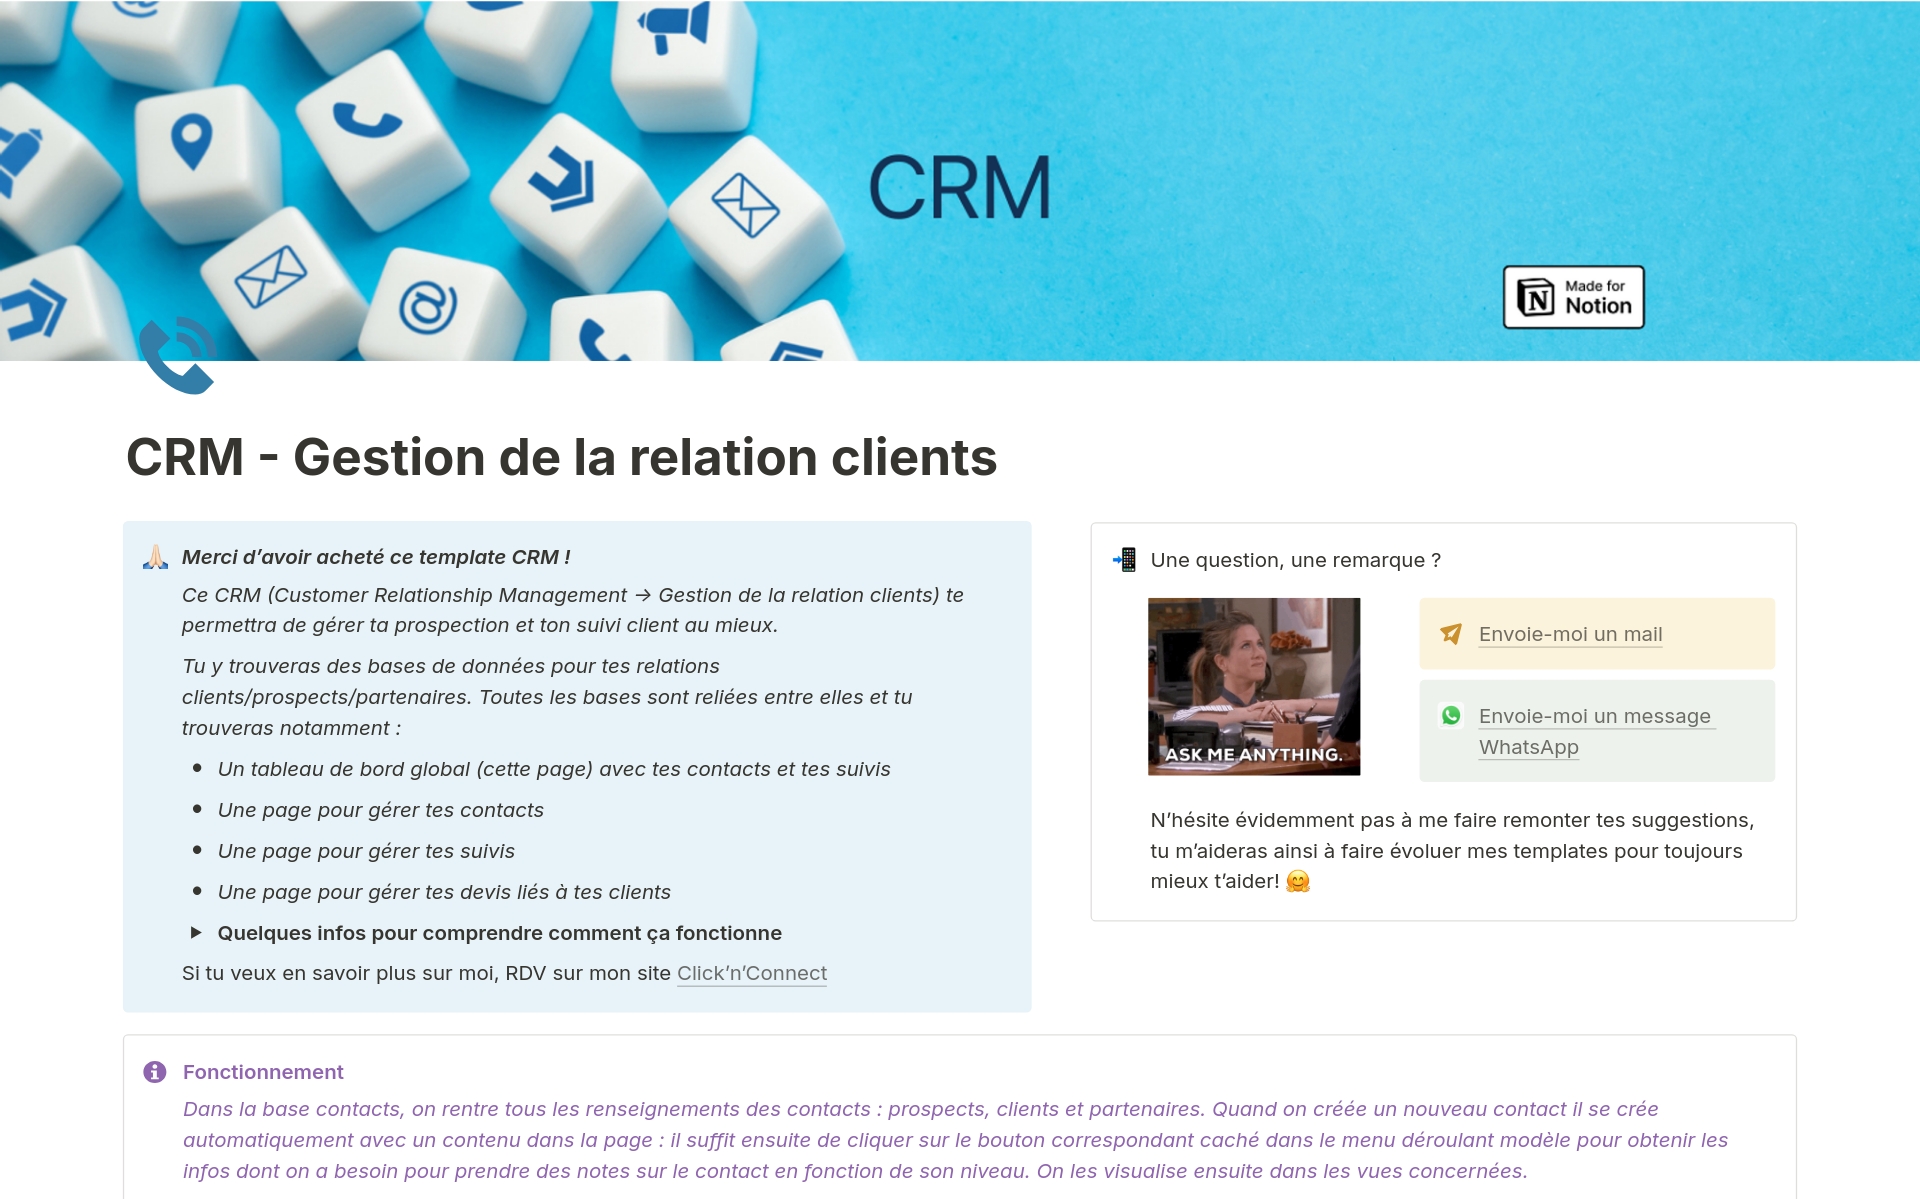 Ce CRM te permettra de gérer ta relation clients : suivi clients & prospects, devis et statistiques de prospection automatisées.
Un CRM complet !